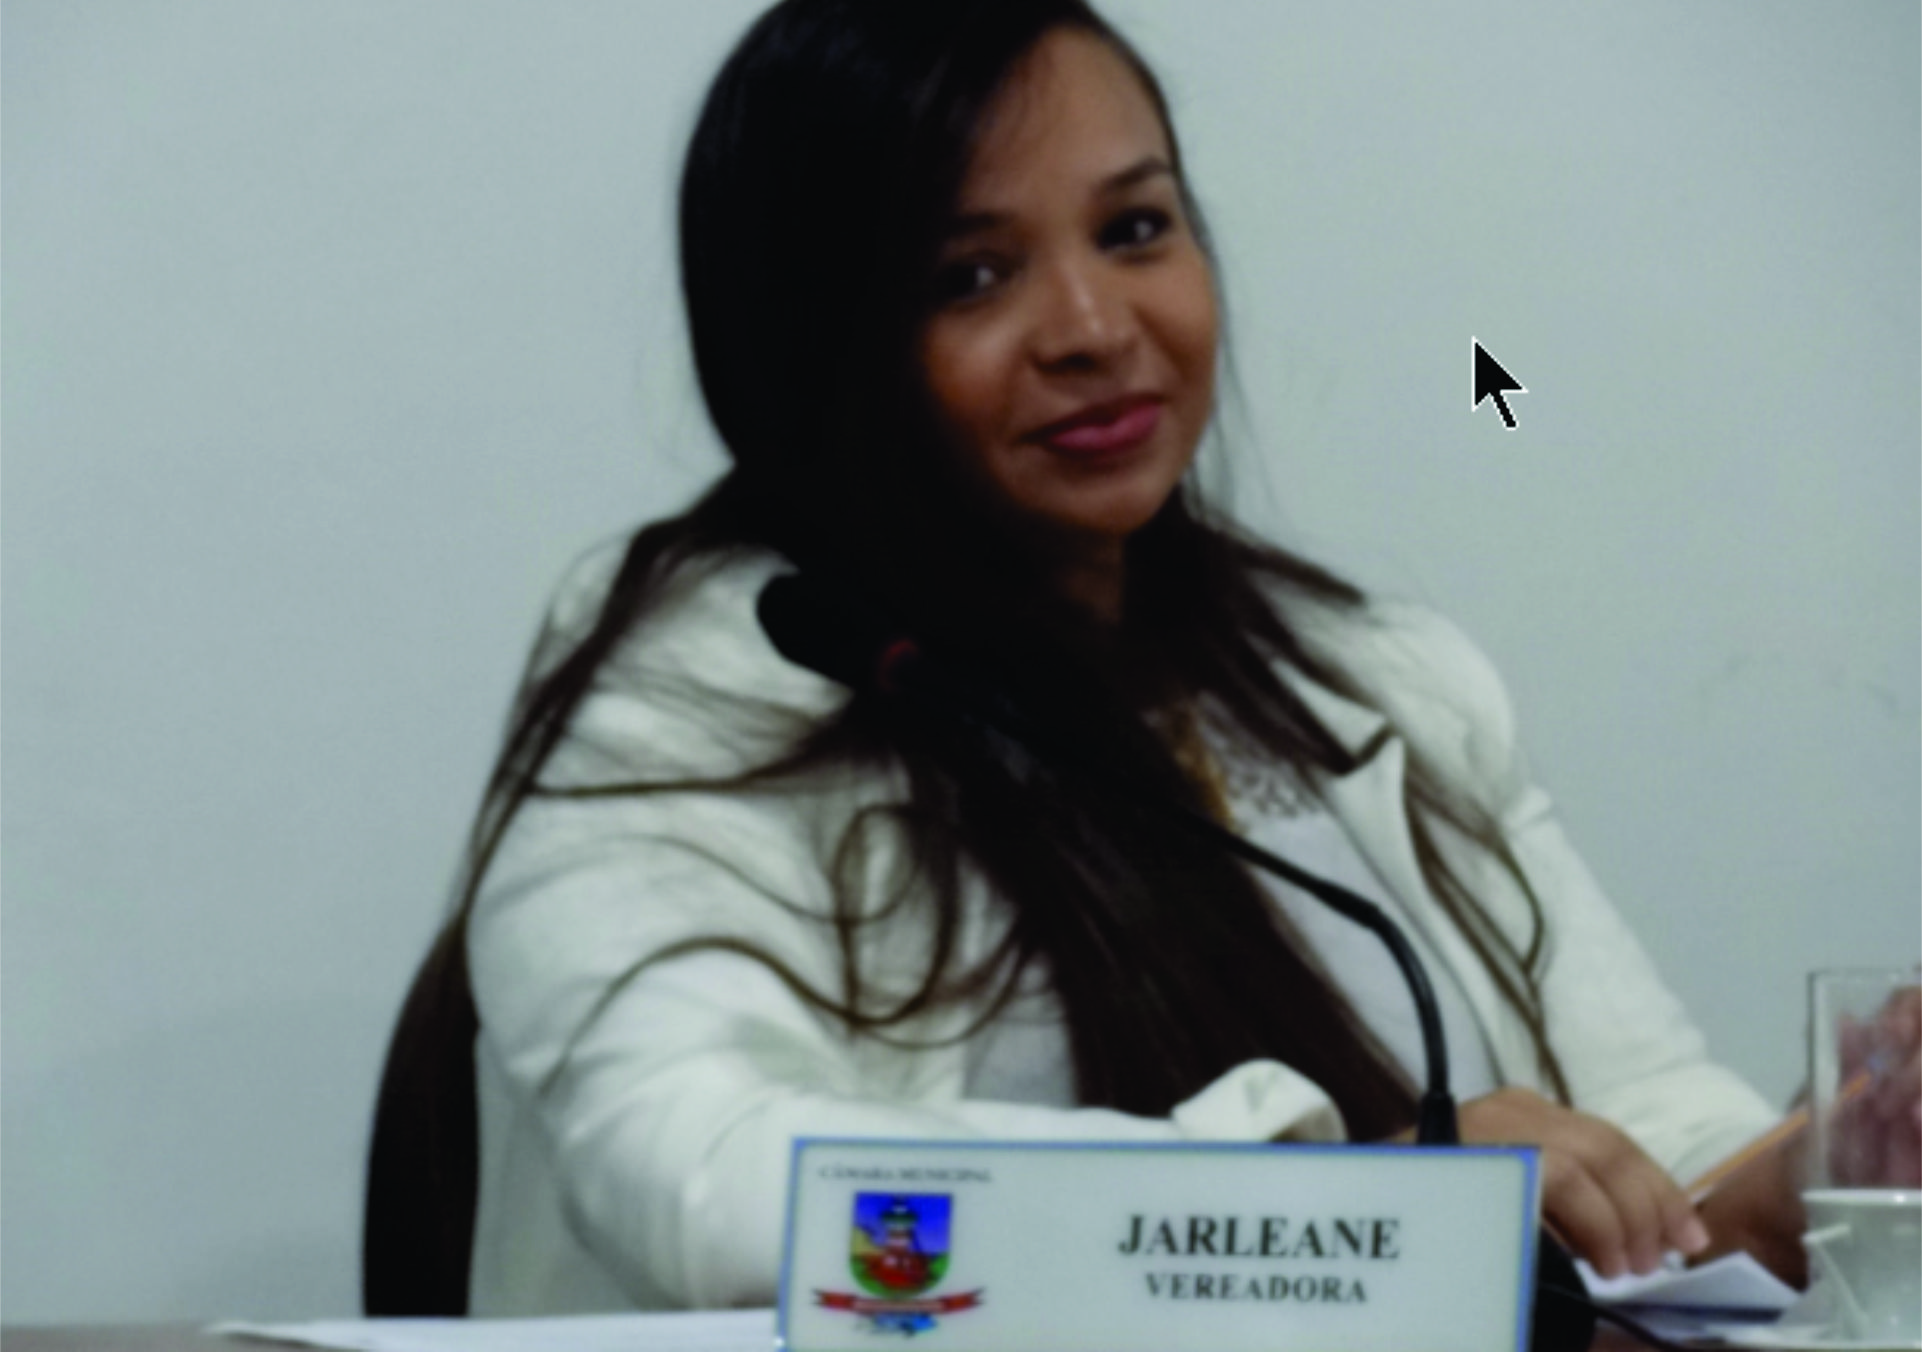 Vereadora Jarleane Câmara solicitações informações sobre o funcionamento das câmeras de monitoramento